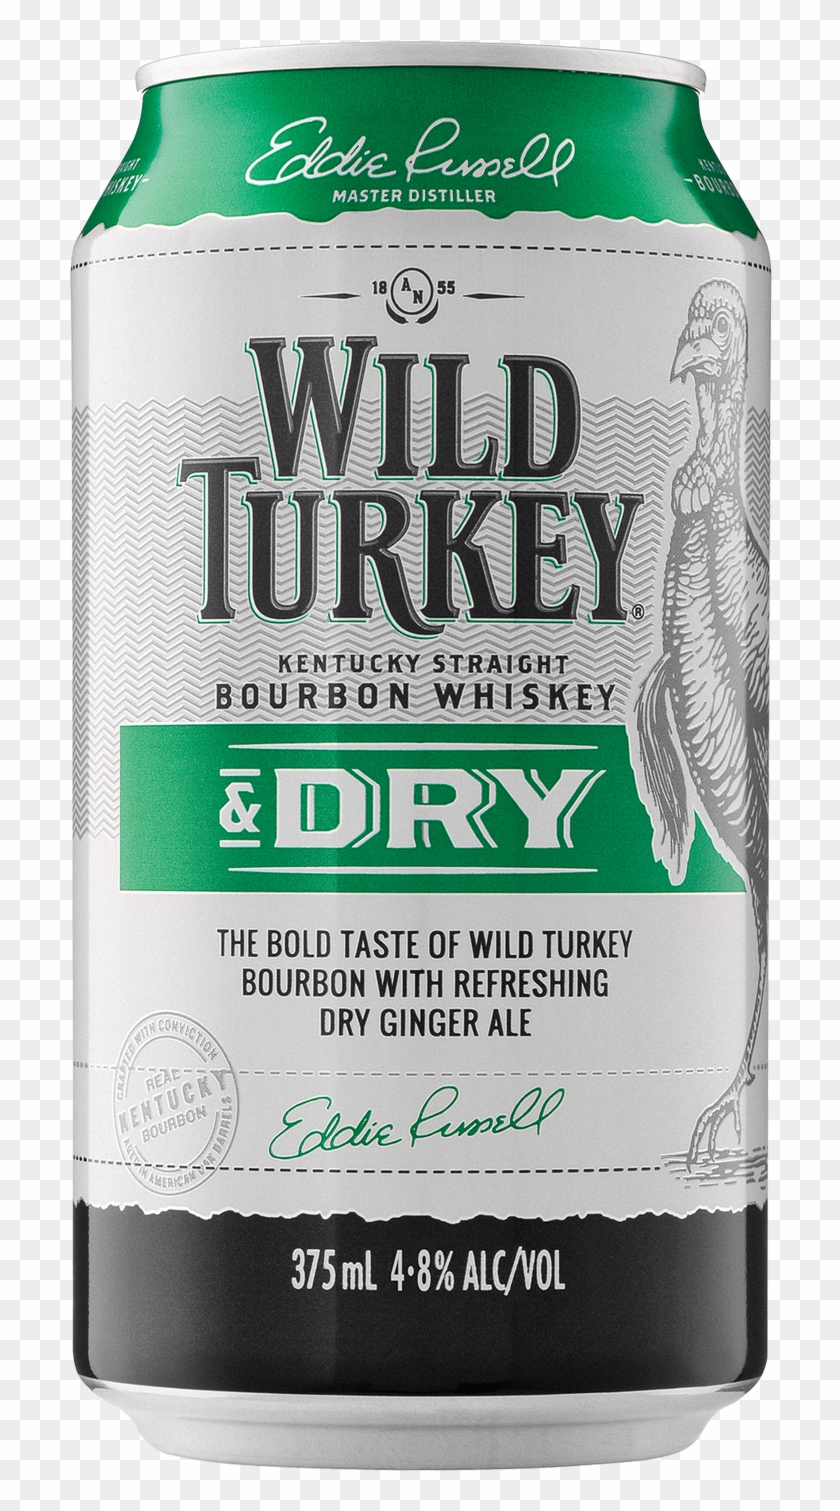 Wild Turkey Bourbon & Dry Cans 375ml - Wild Turkey Bourbon Clipart #5532440